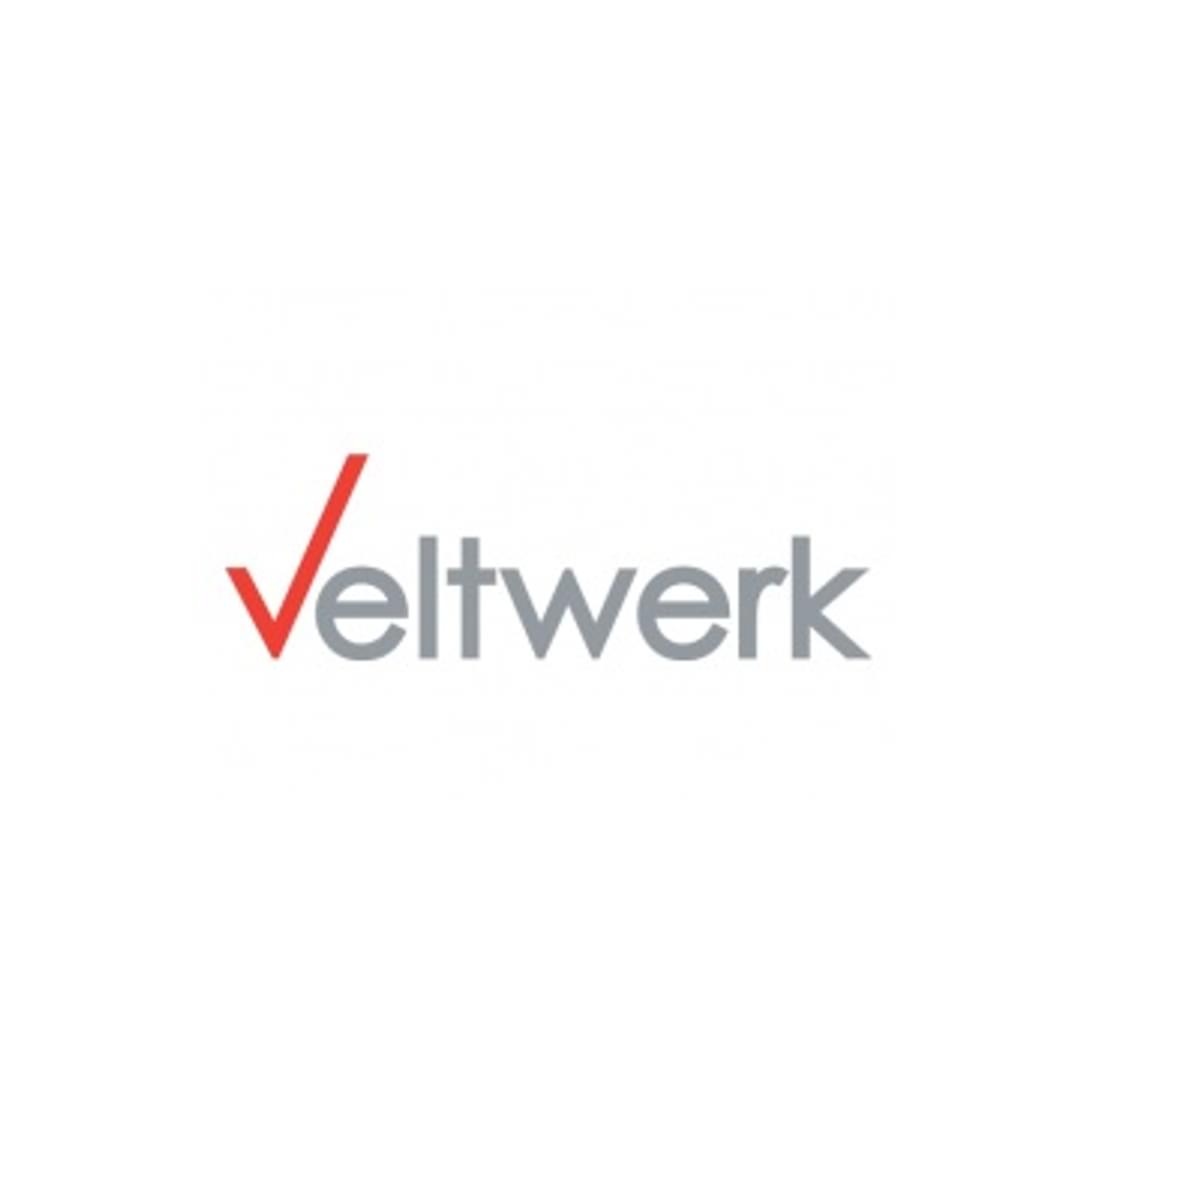 Het Baken Almere kiest voor het VO Concept van Veltwerk image